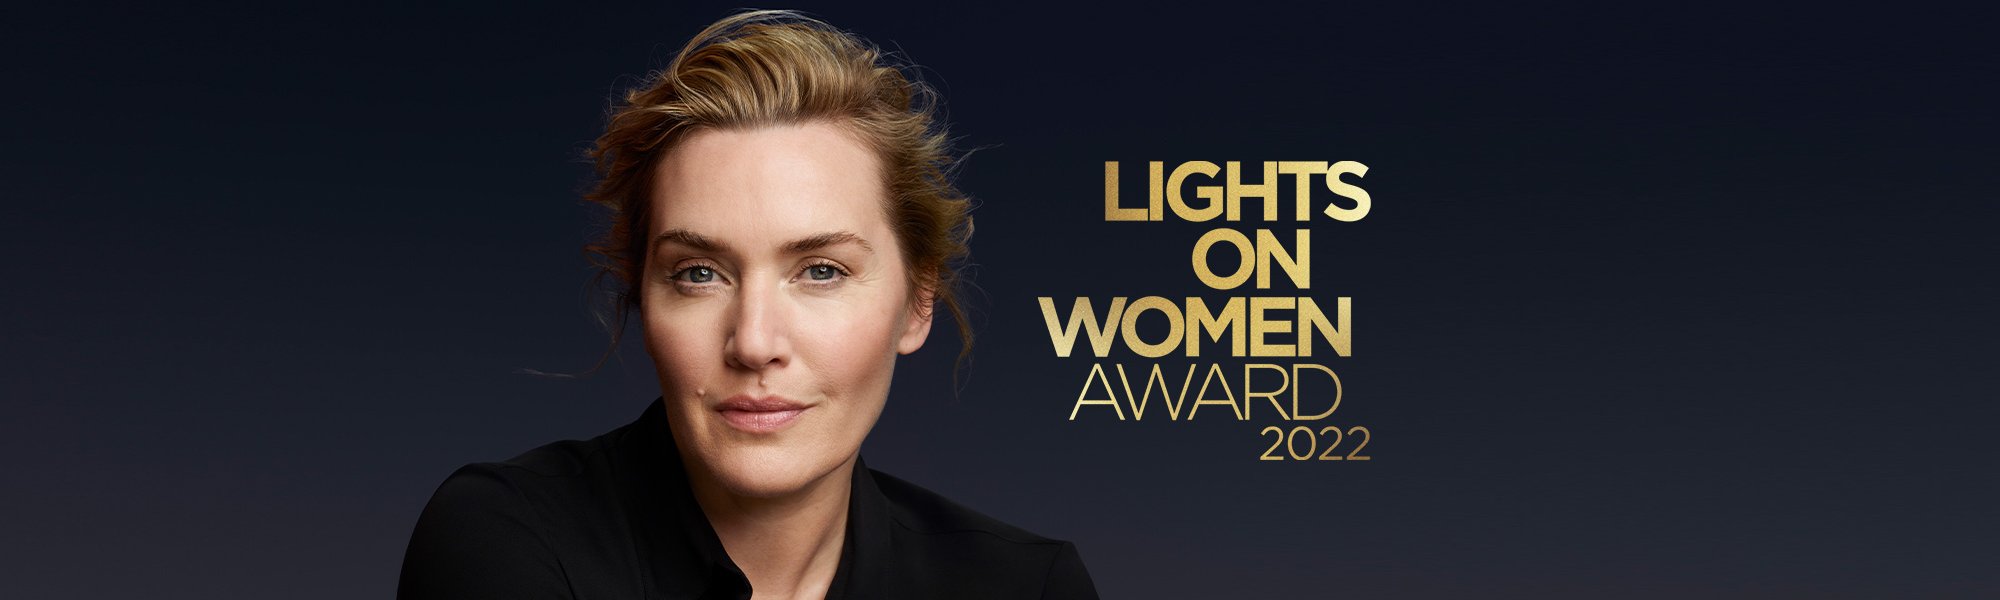 Kate Winslet, Lights on Women Awards 2022